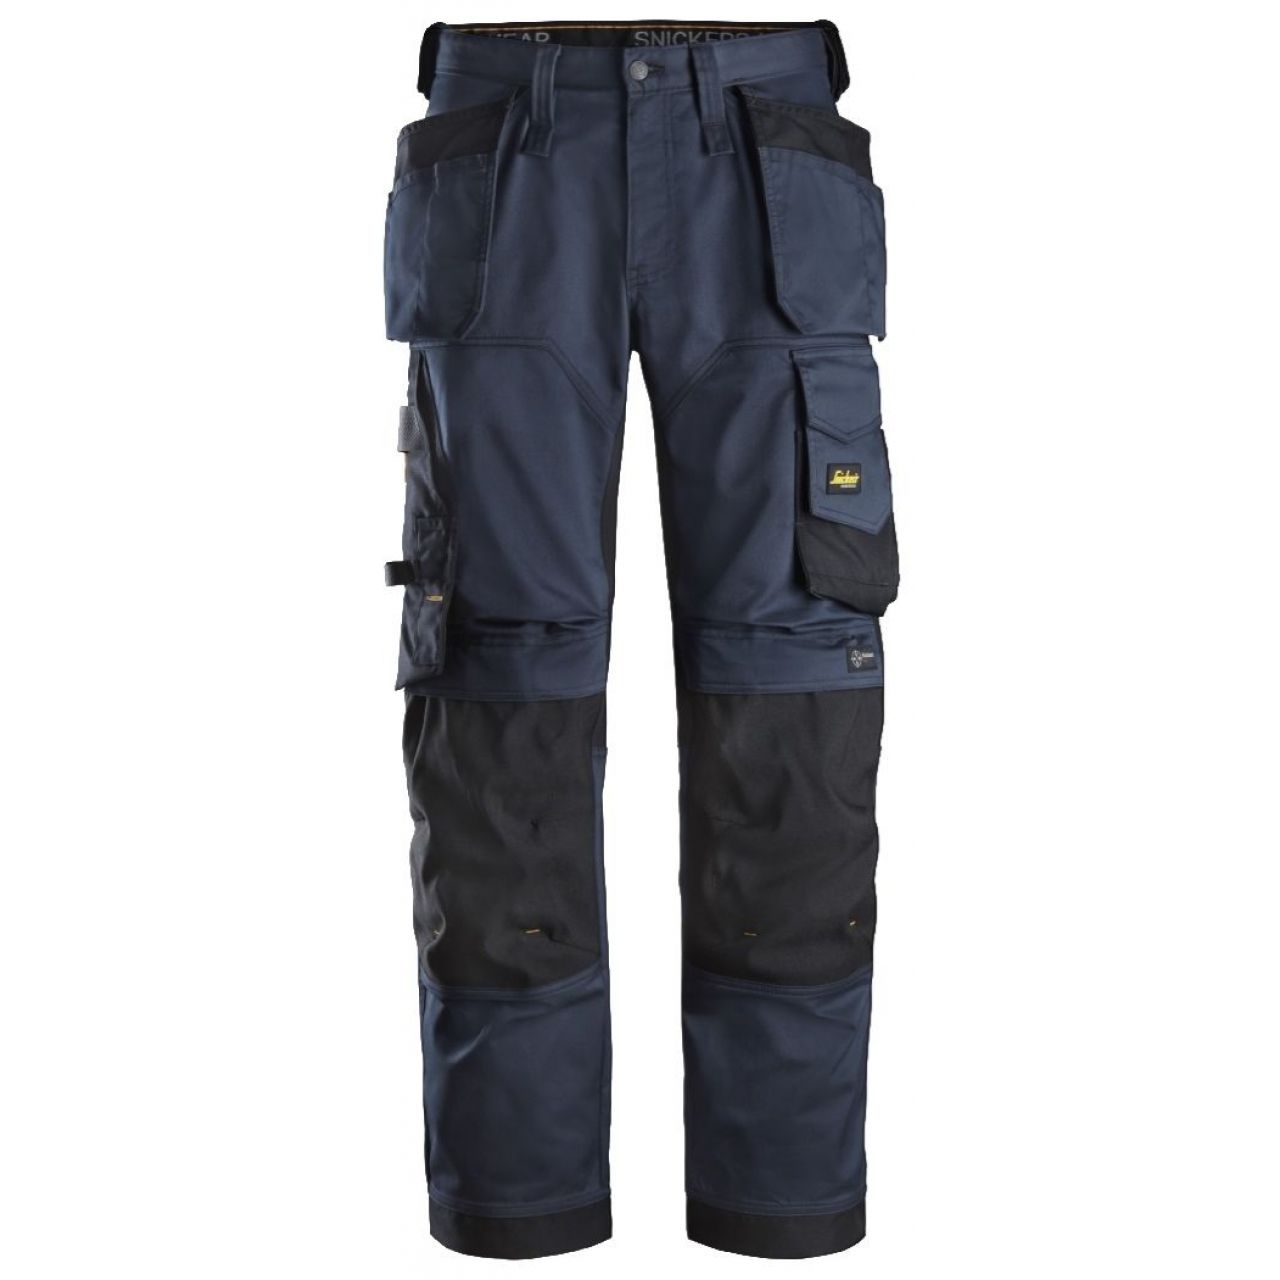 Pantalon elastico ajuste holgado AllroundWork bolsillos flotantes azul marino-negro talla 254